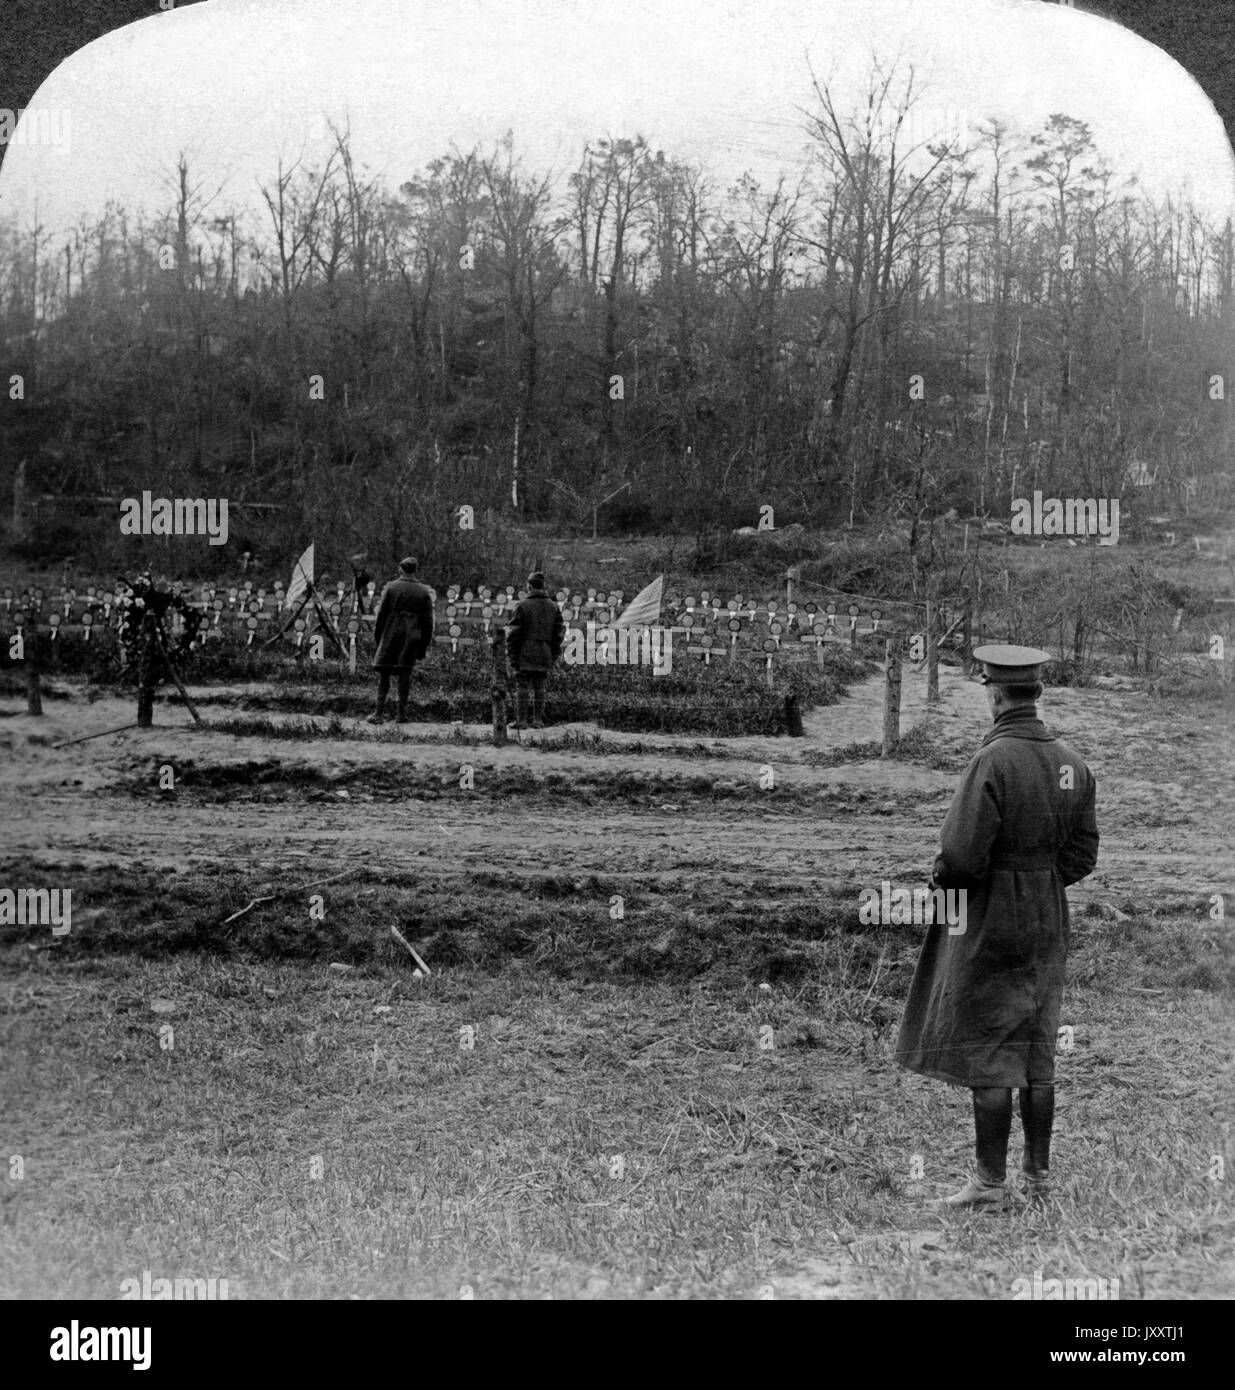 In den Wäldern von Belleau, wo amerikanische Marines das Blatt gewendet haben, bei einem amerikanischen Soldatenfriedhof, Dezember 1918. Belleau Wälder, wo amerikanische Marines der Tide und Amerikanischen Friedhof, Frankreich, Dezember 1918. Stockfoto